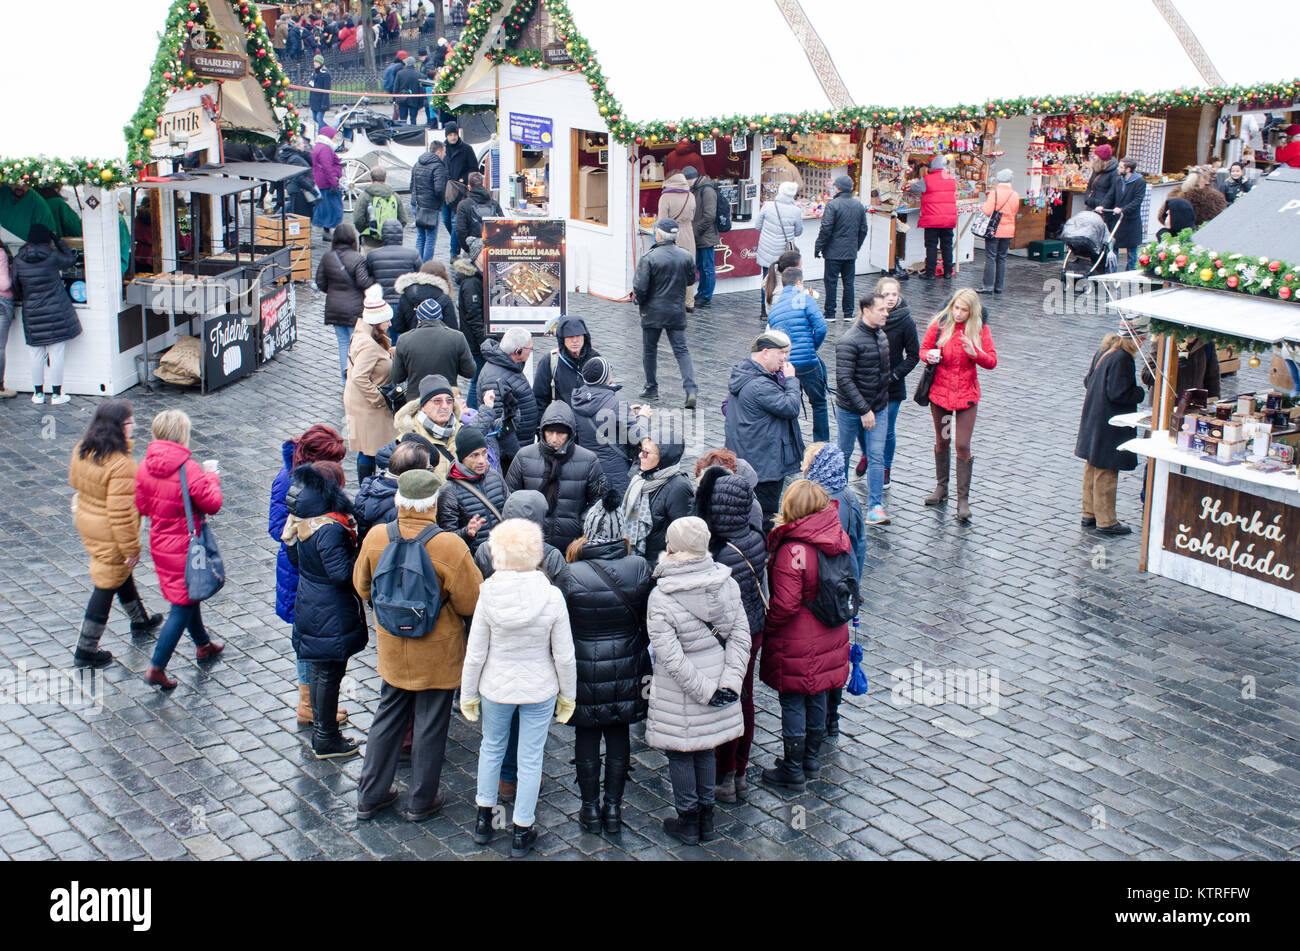 In Prag in der Tschechischen Republik-5 Dezember 2017: Große Gruppe Touristen im Alten Rathaus Platz für Weihnachtsmarkt Stockfoto